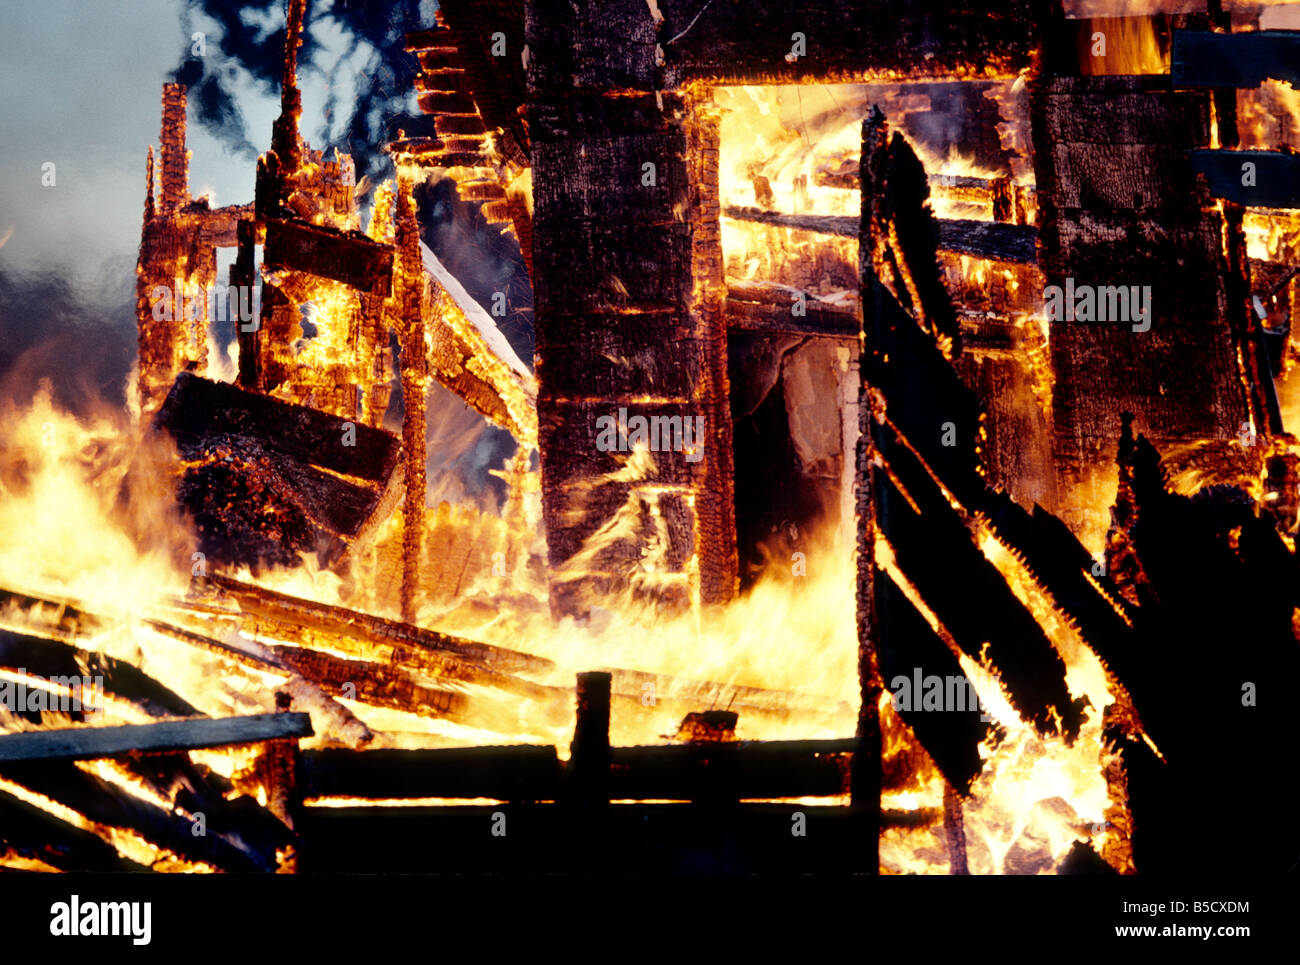 Inferno, llamas consumen estructura de madera home. Foto de stock